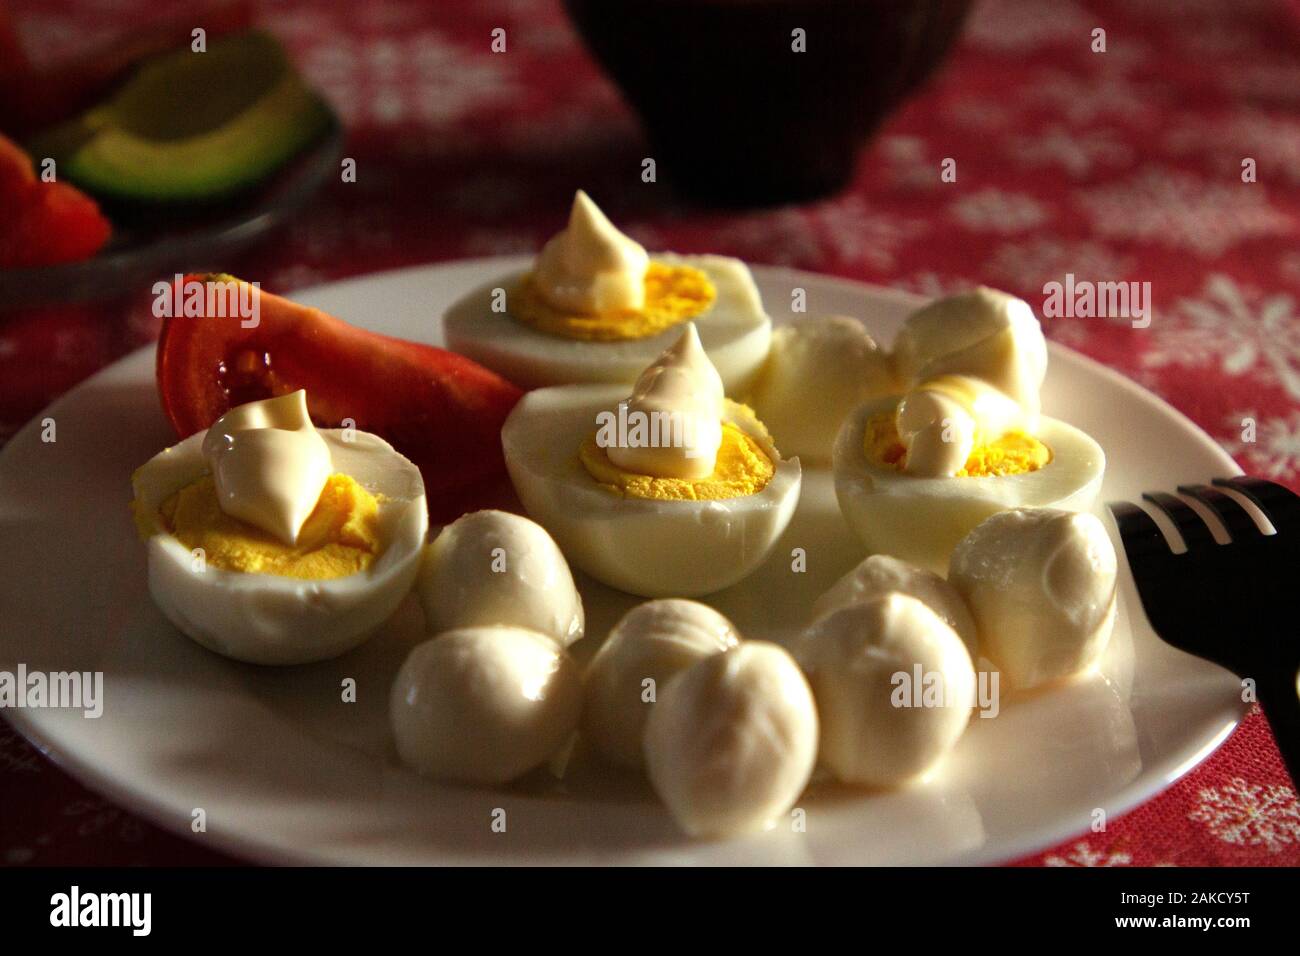 Cetogï¿½ica saludable desayuno. Ceto low-carb huevos cocidos con mayonesa casera y mozzarella. La mejor dieta para el cerebro. Foto de stock